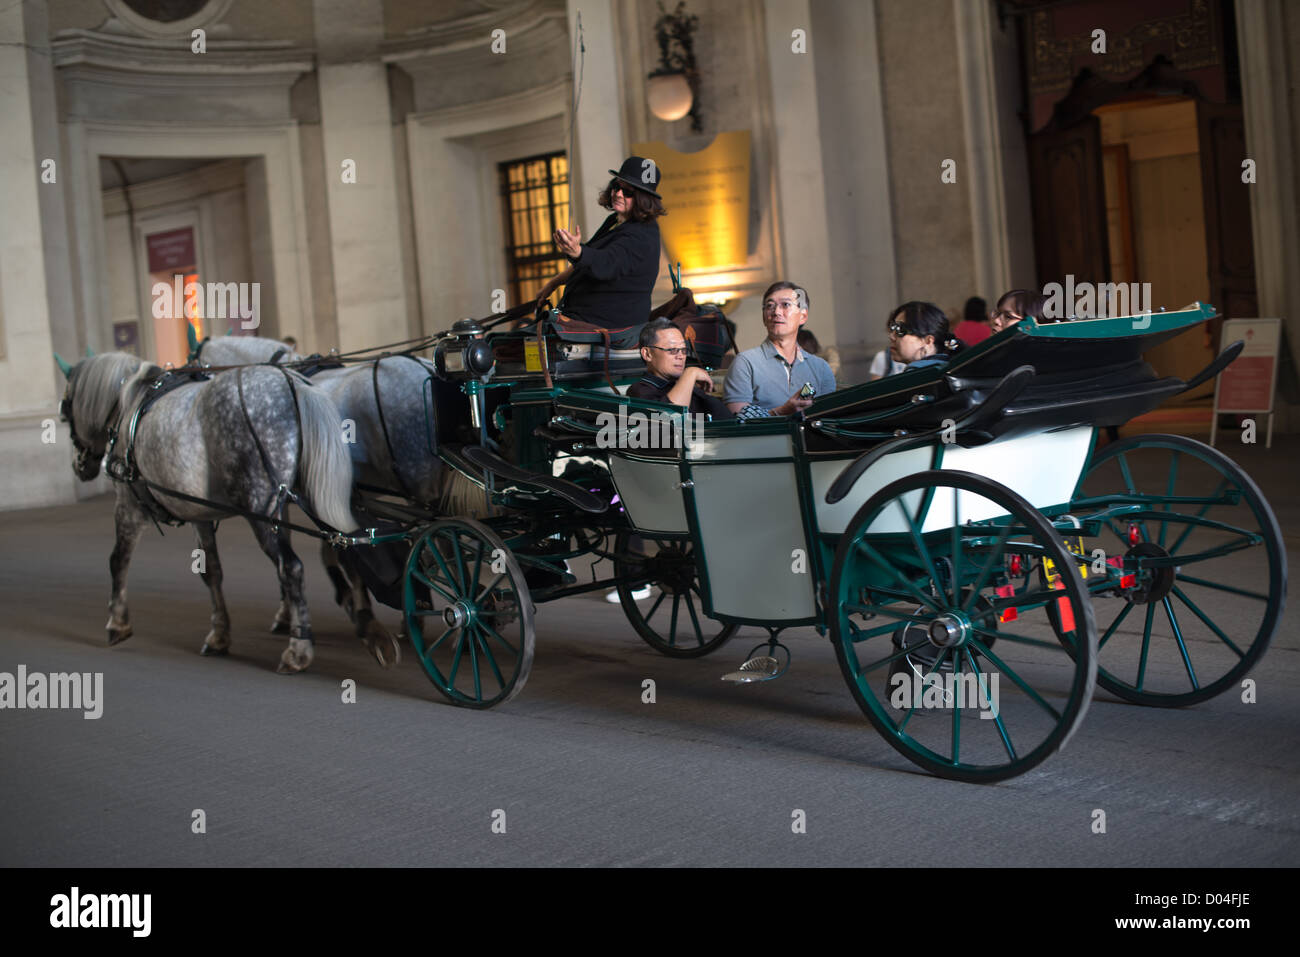 Carruaje de caballos y tradicional (también llamado Fiaker) conducir a través del famoso Palacio Imperial de Hofburg, el 3 de octubre de 2012 en Viena, Austria. Foto de stock